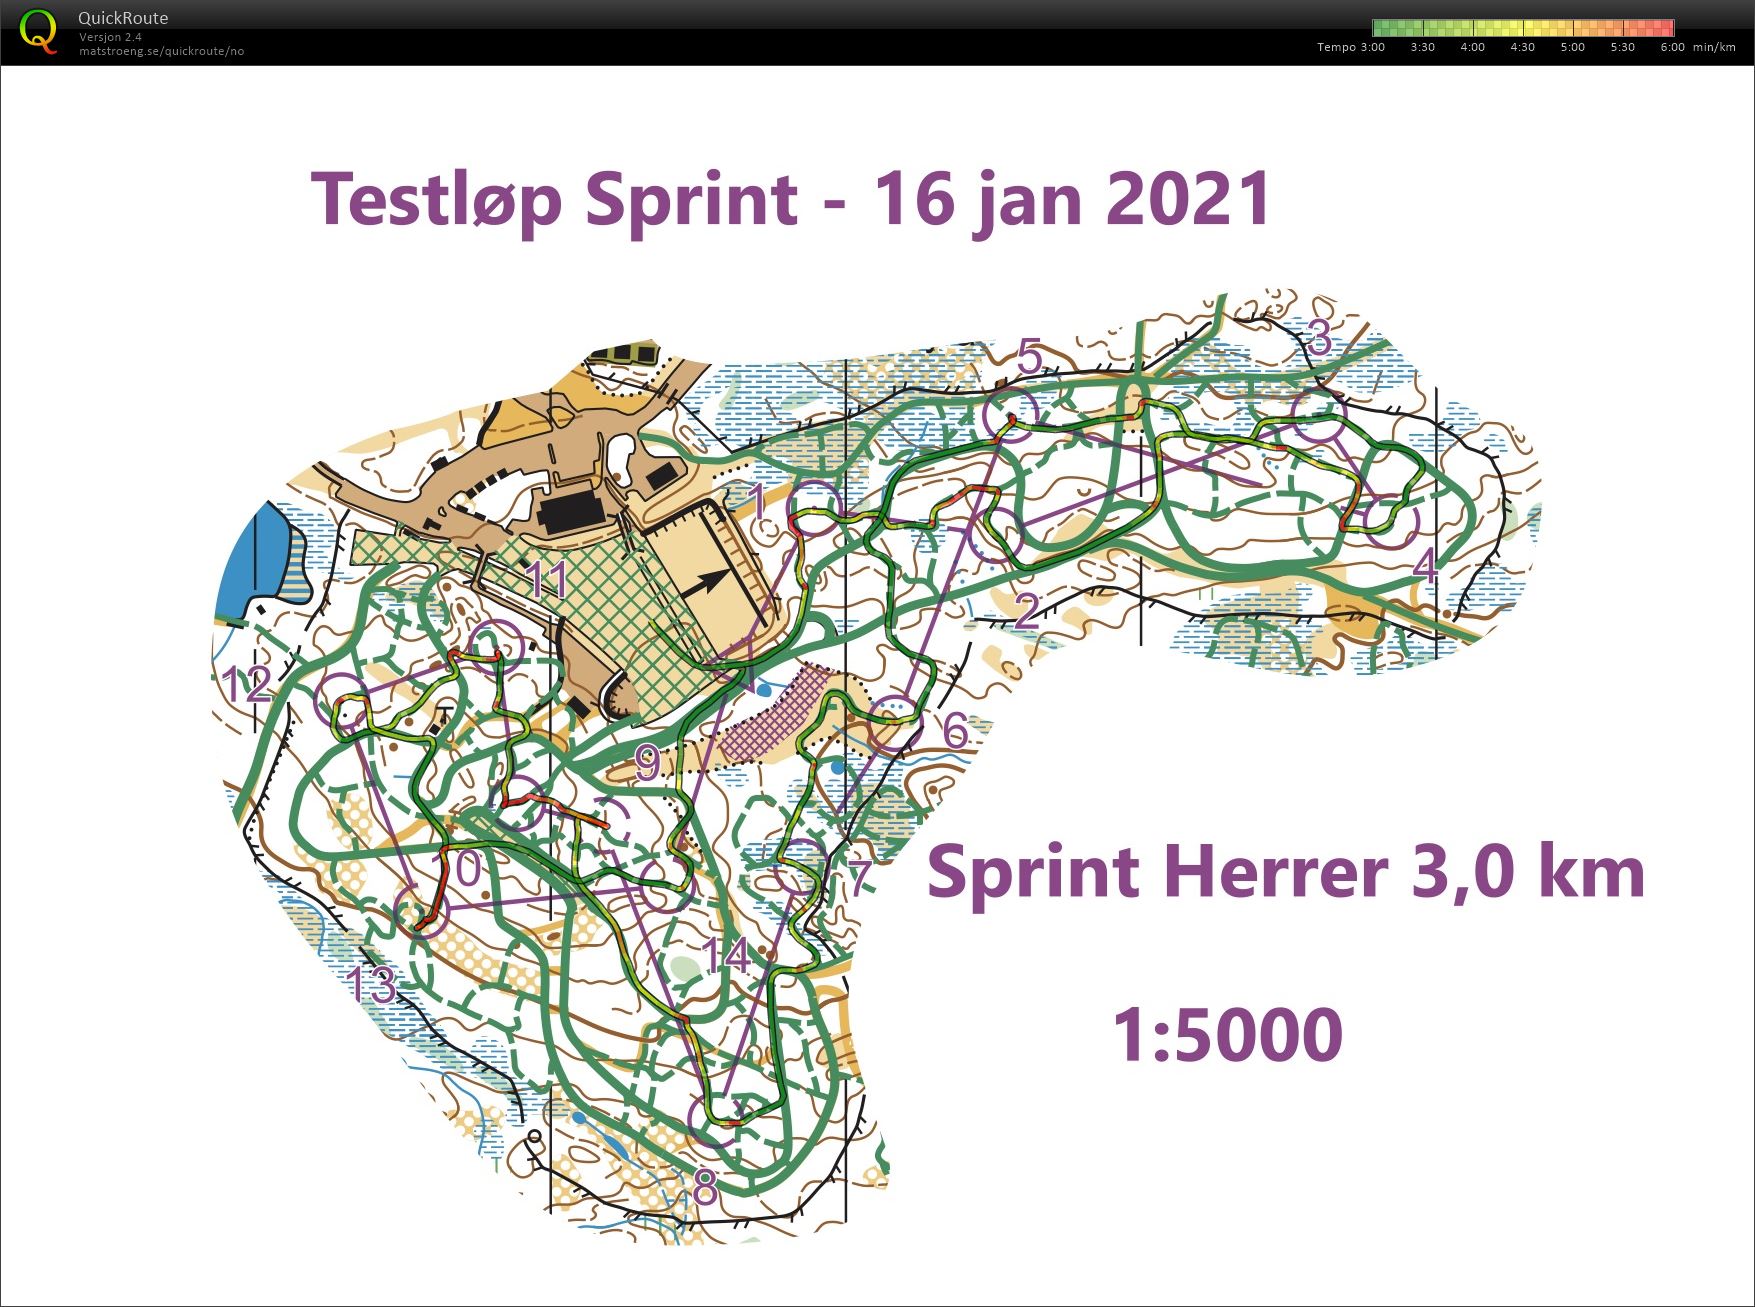 Ski-o sprint hardøkt (16-01-2021)